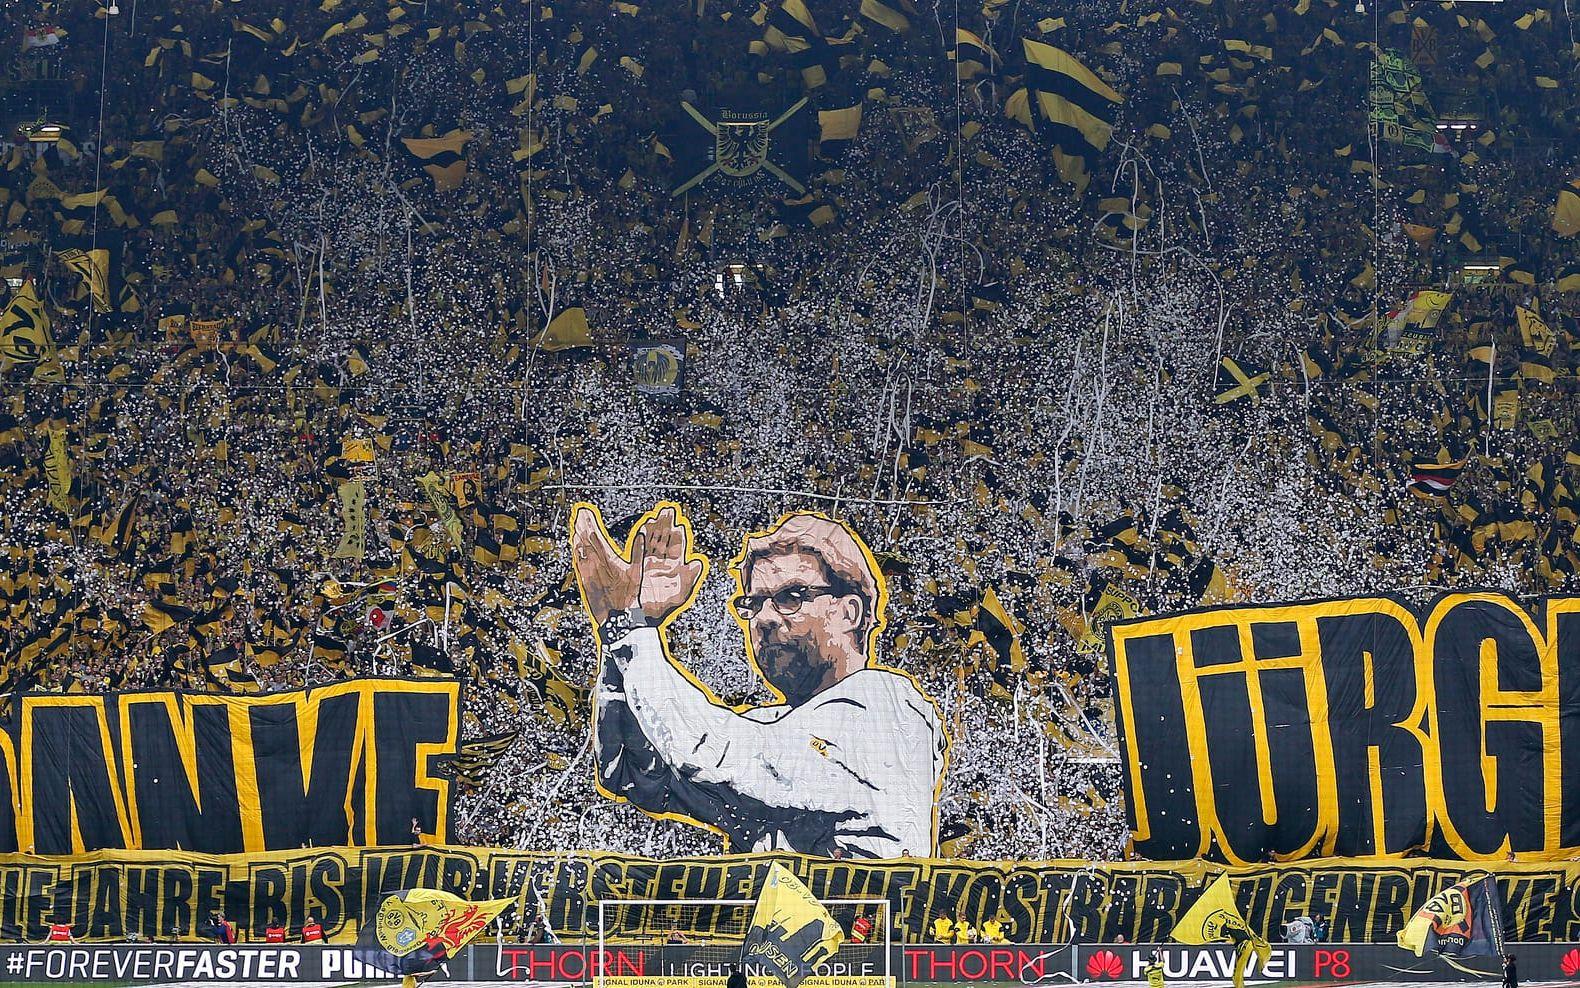 "När Dortmund vann här för 19 år sedan ammades fortfarande de flesta av mina spelare." Klopps kommentar när Dortmund, efter många år utan fullpoängare,  hade lyckats besegra Bayern München med 3–1 i februari 2011. Foto: Bildbyrån